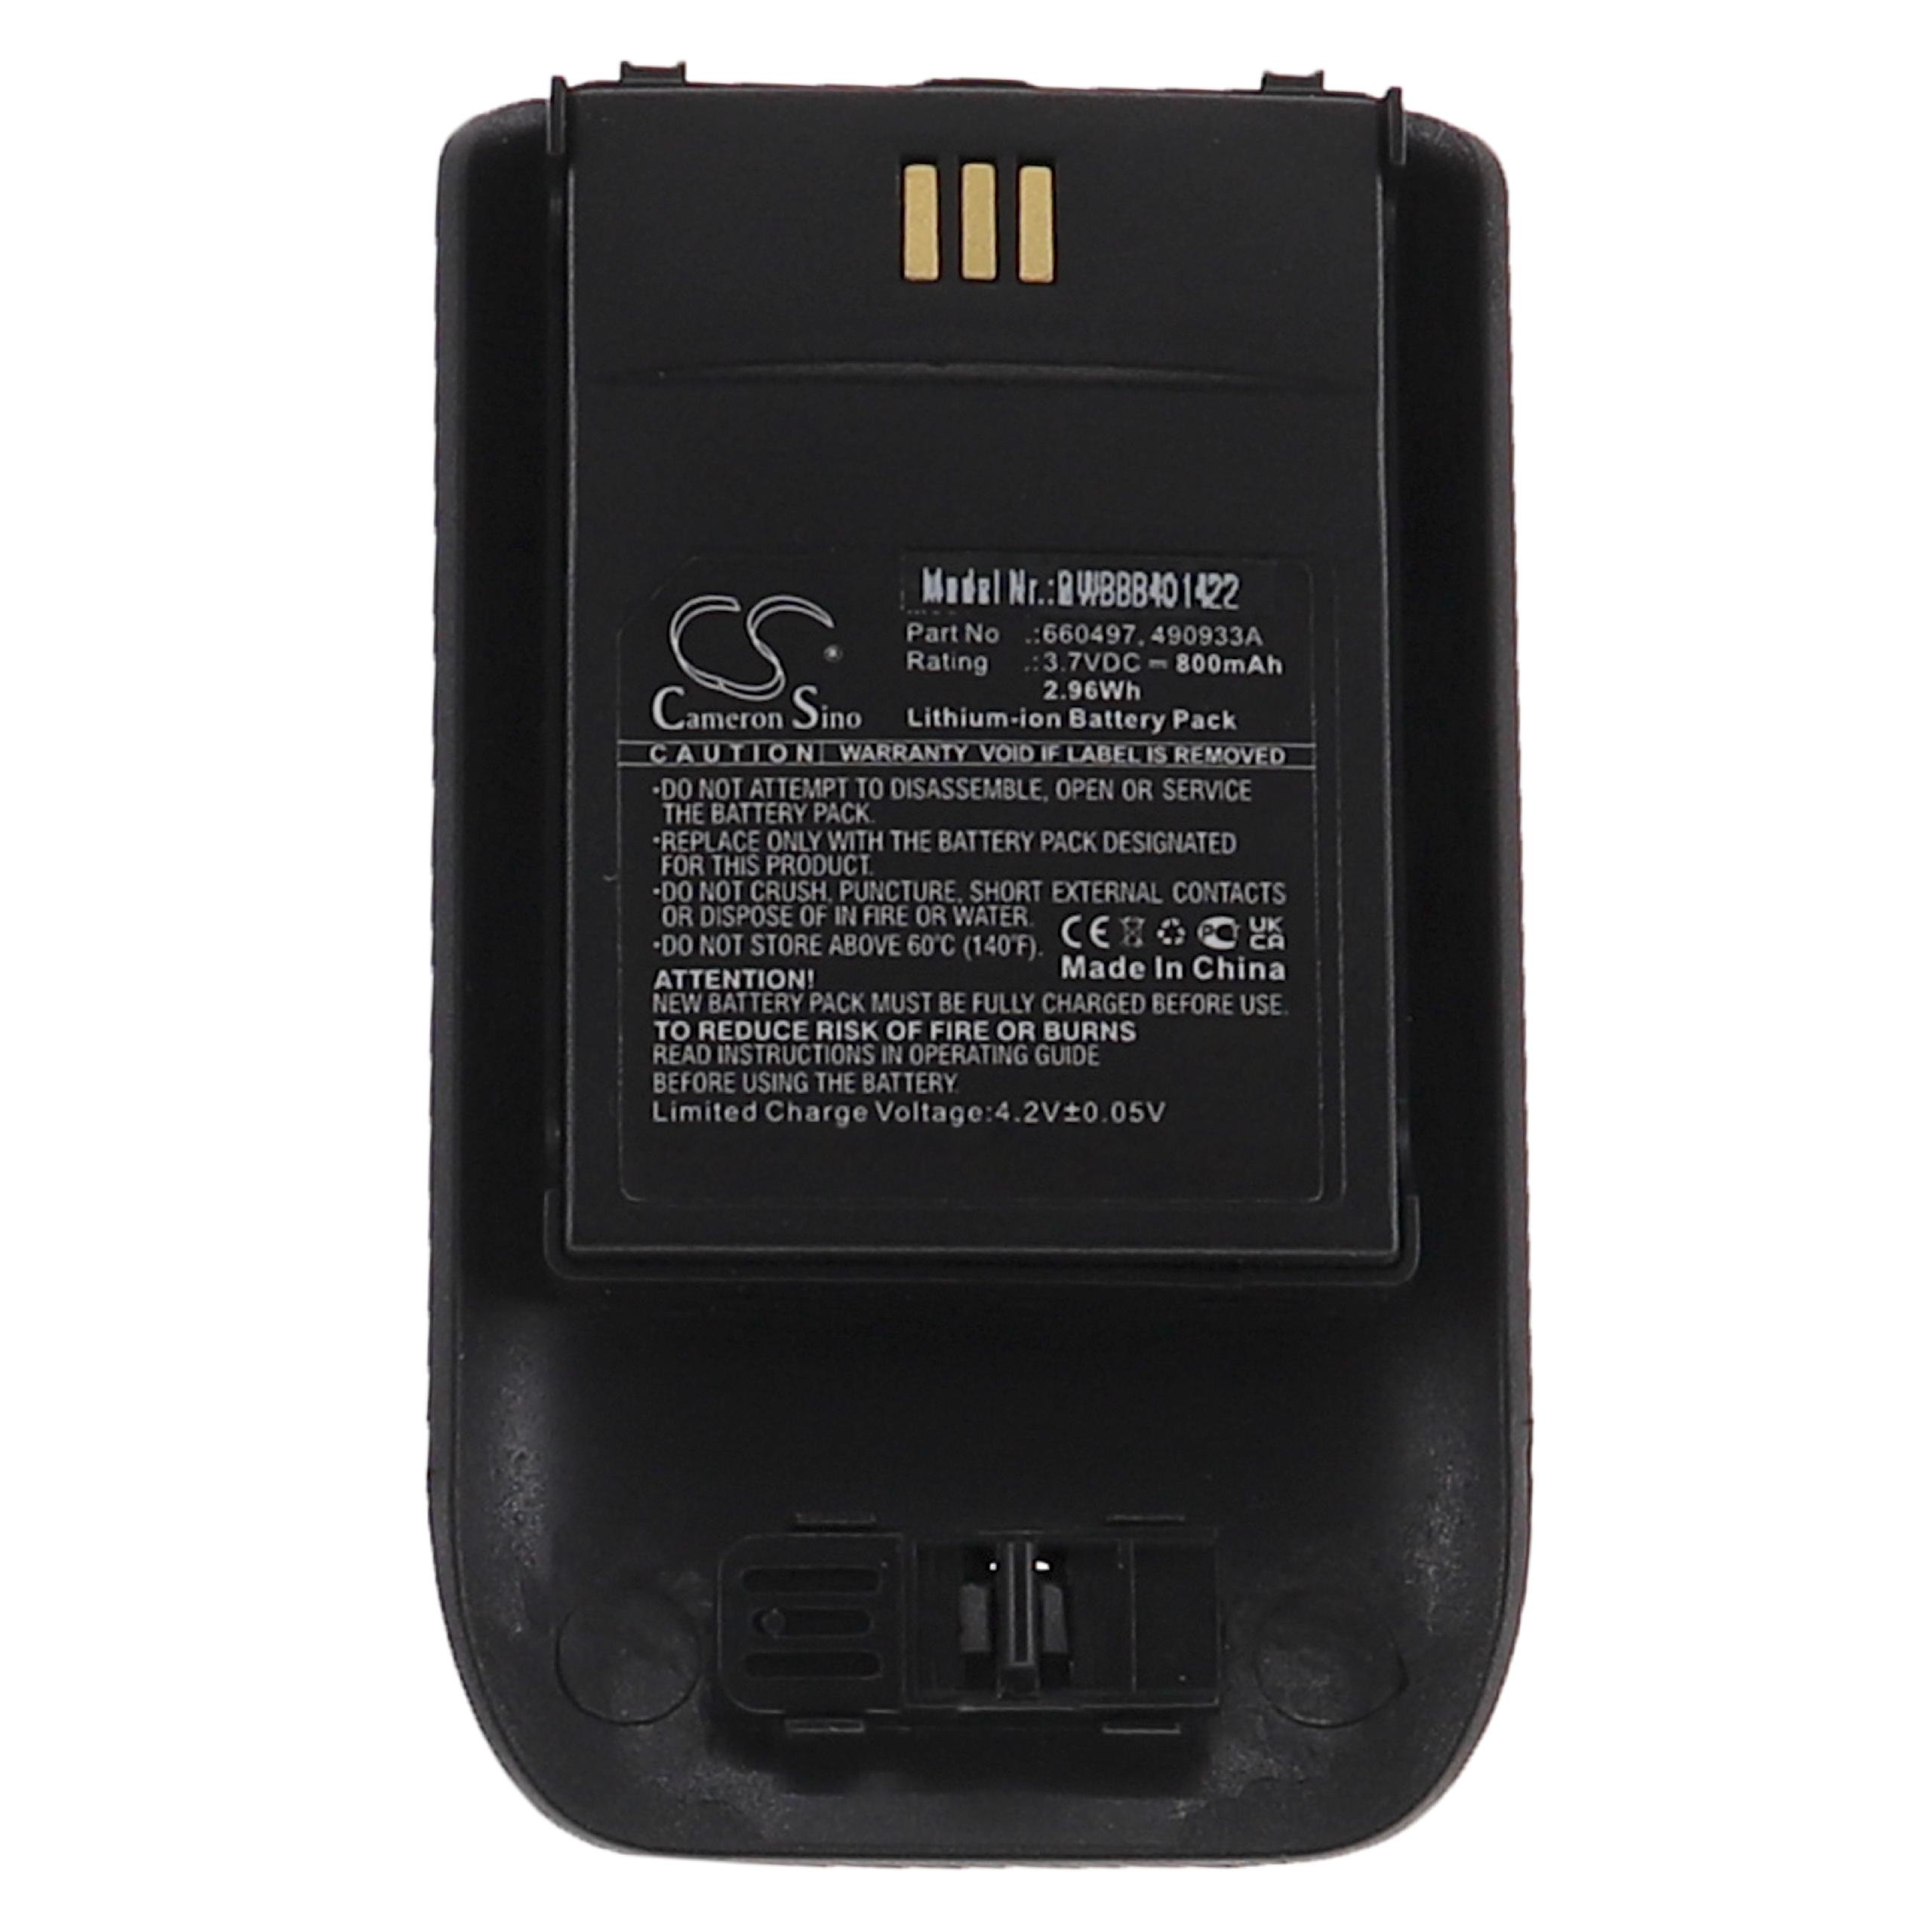 Batterie remplace Ascom 490933A, 660497 pour téléphone - 800mAh 3,7V Li-ion